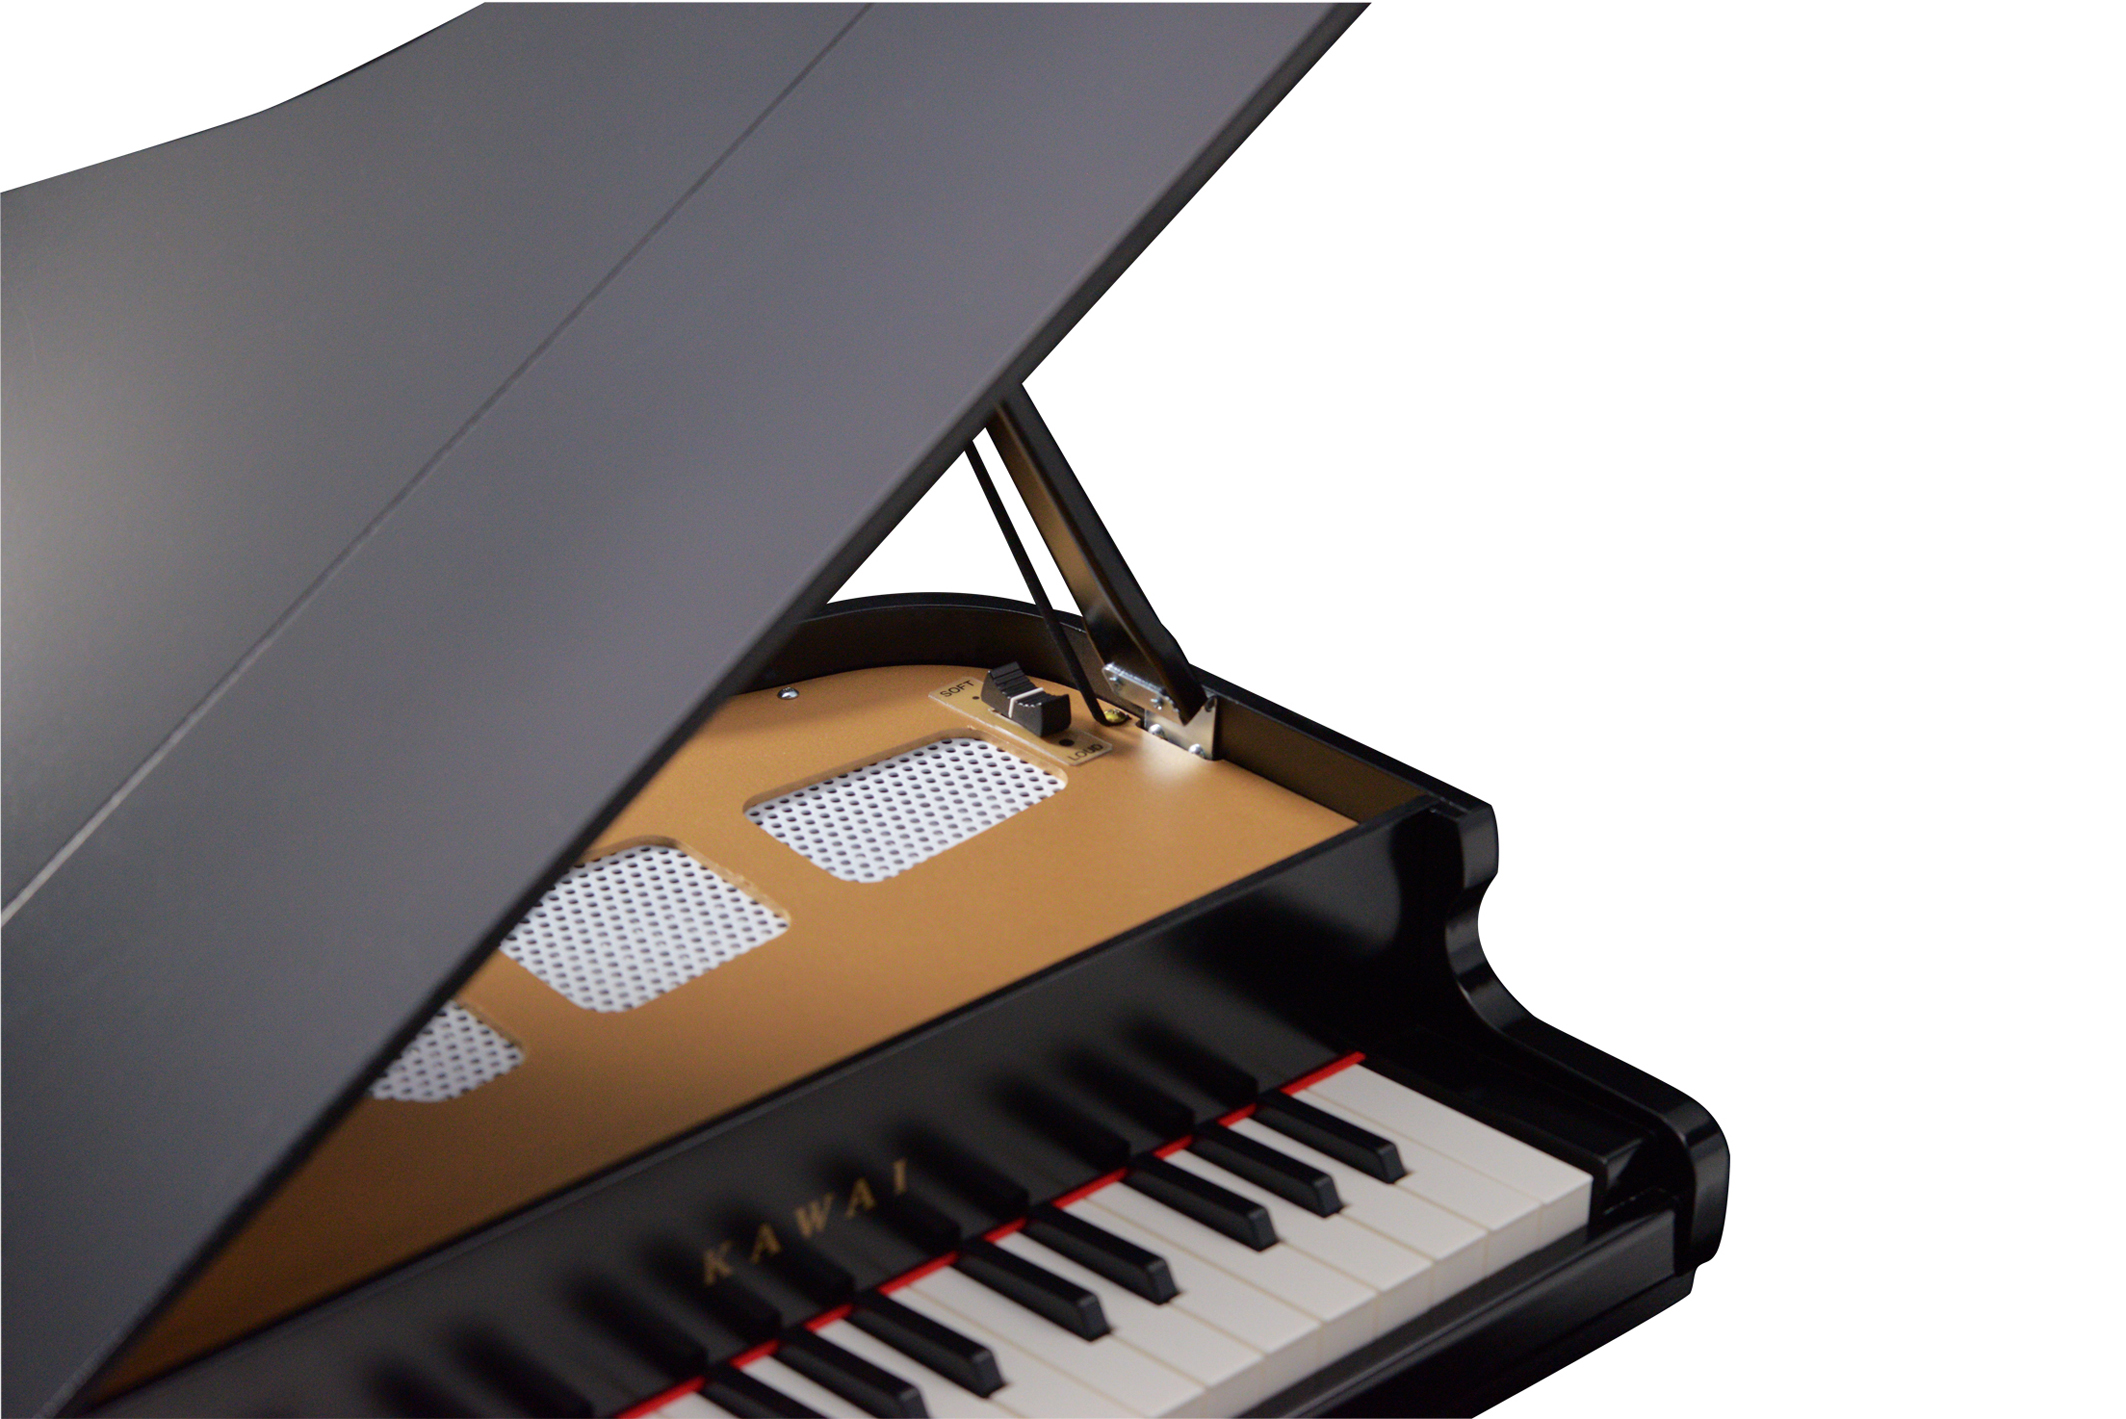 カワイミニピアノに新製品登場 自動演奏機能付きミニピアノ発売 